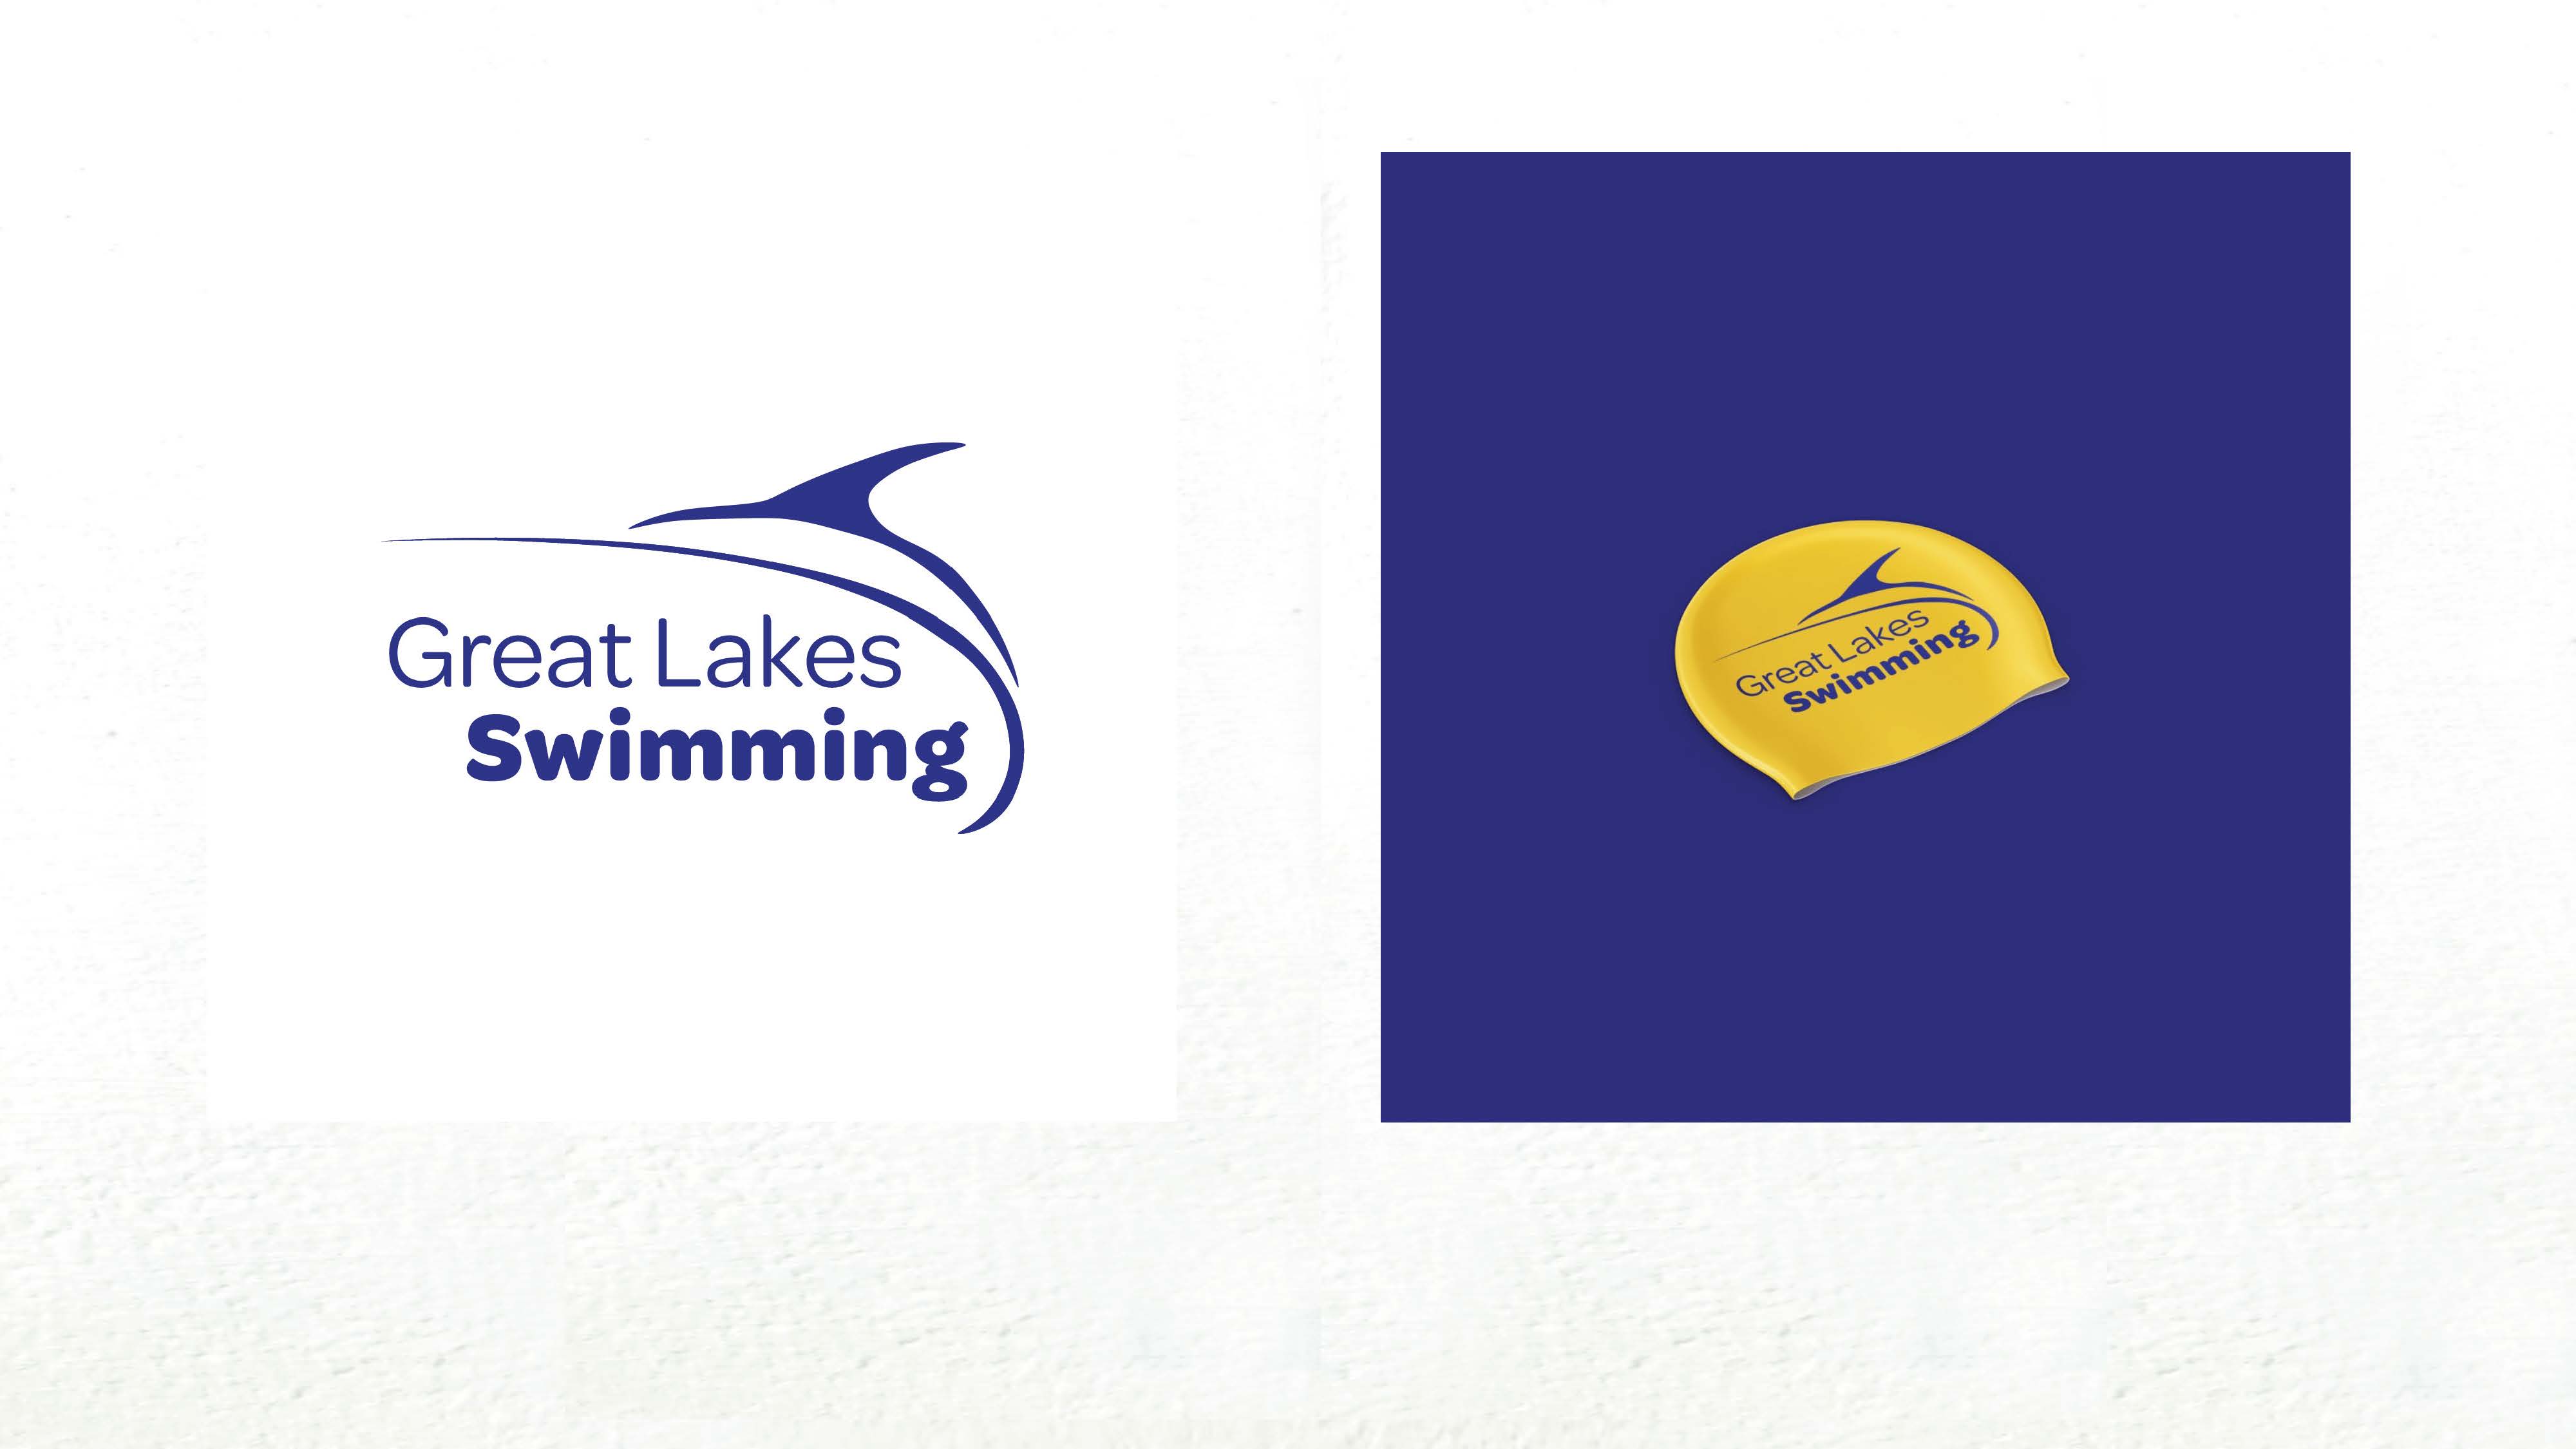 Marisa Stover. “Great Lakes Swimming Logo Design”, digital design, 2021.